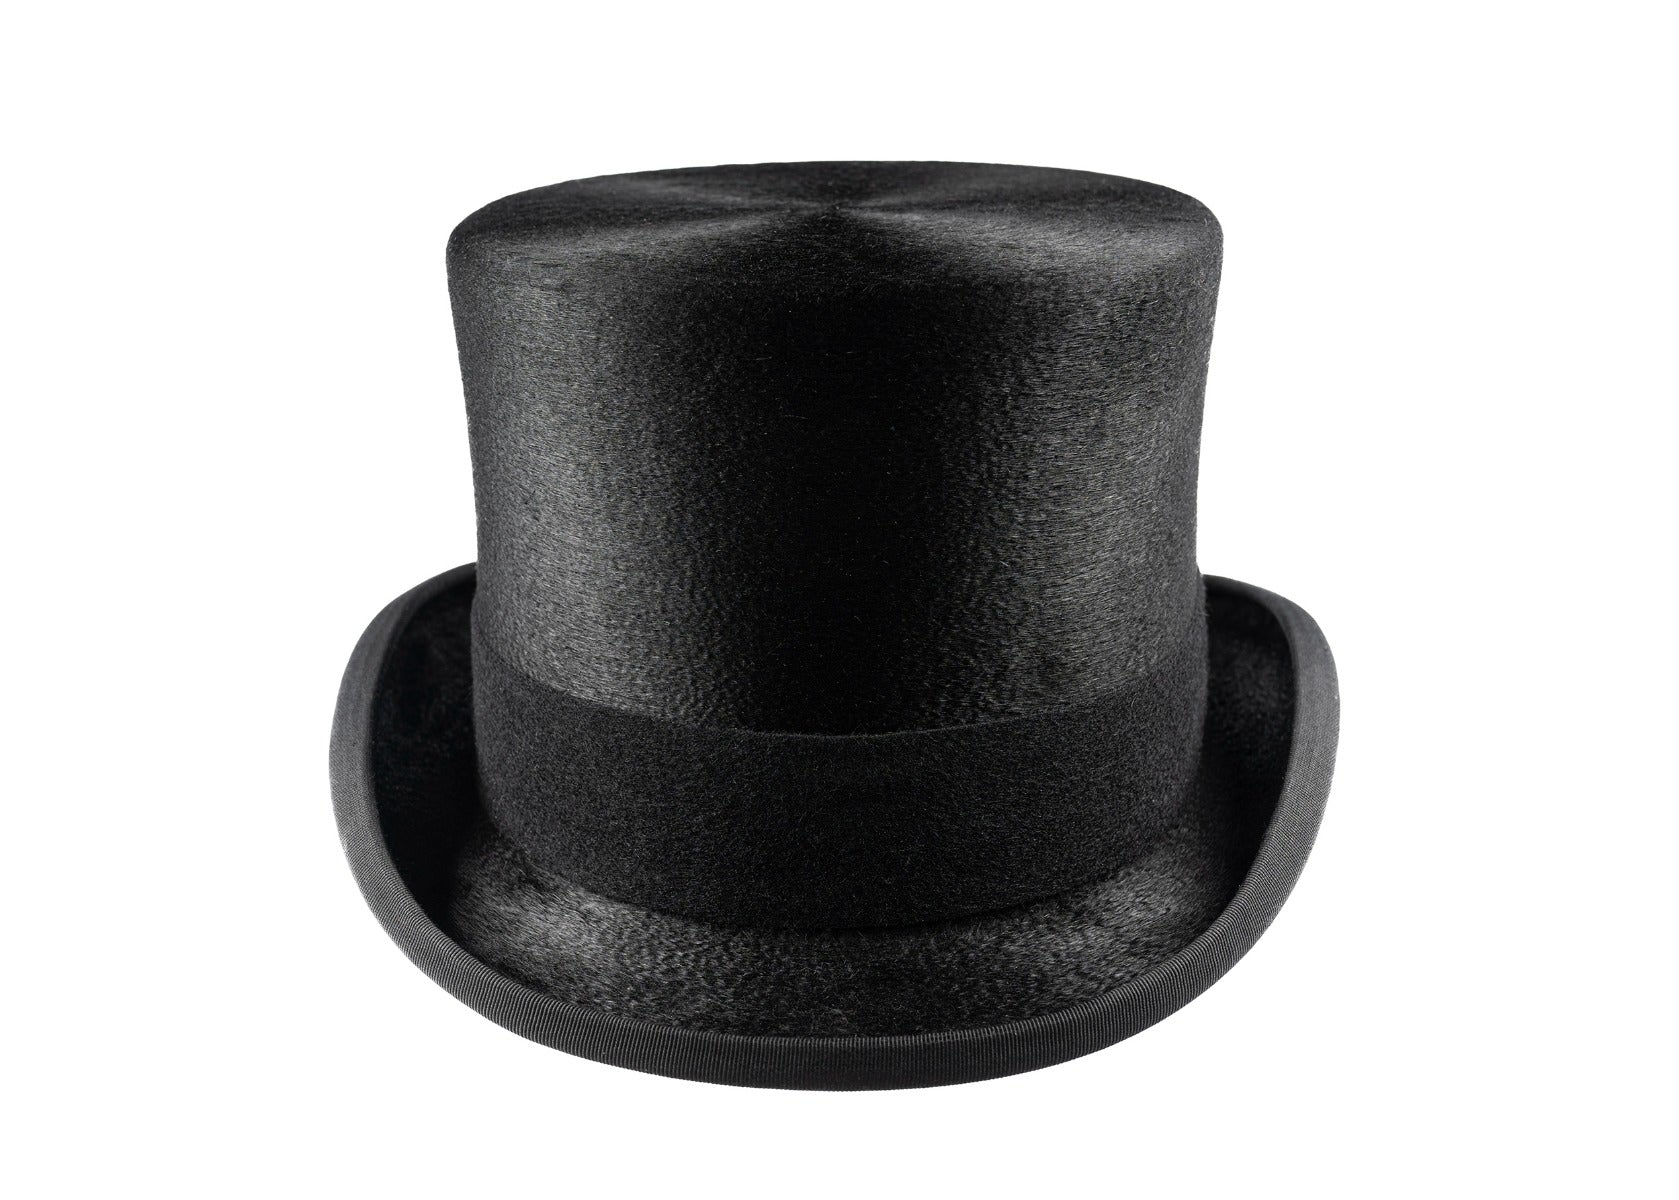 Luxury Black Fur Felt Melusine Top Hat